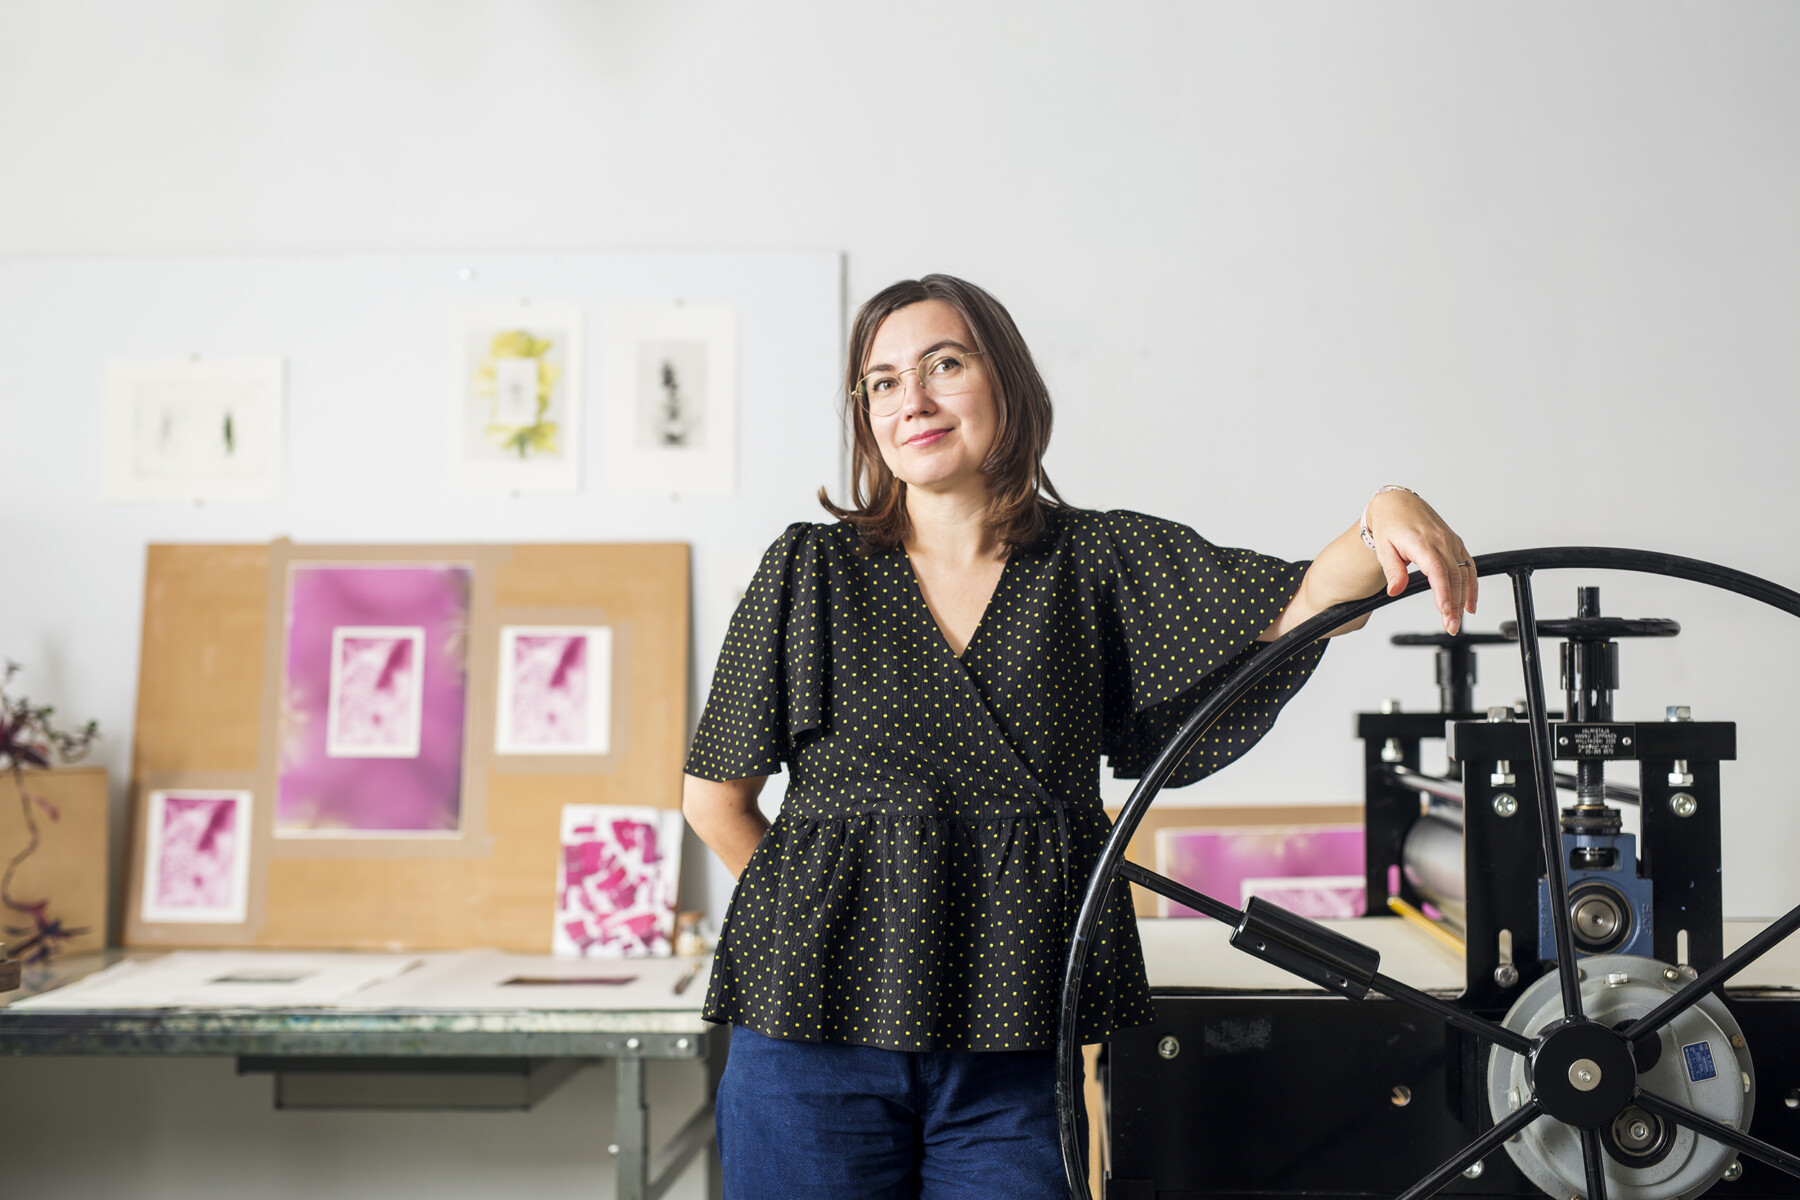 В художественной студии, на стене которой висят гравюры, стоит женщина, опираясь на маховик старинного печатного станка.